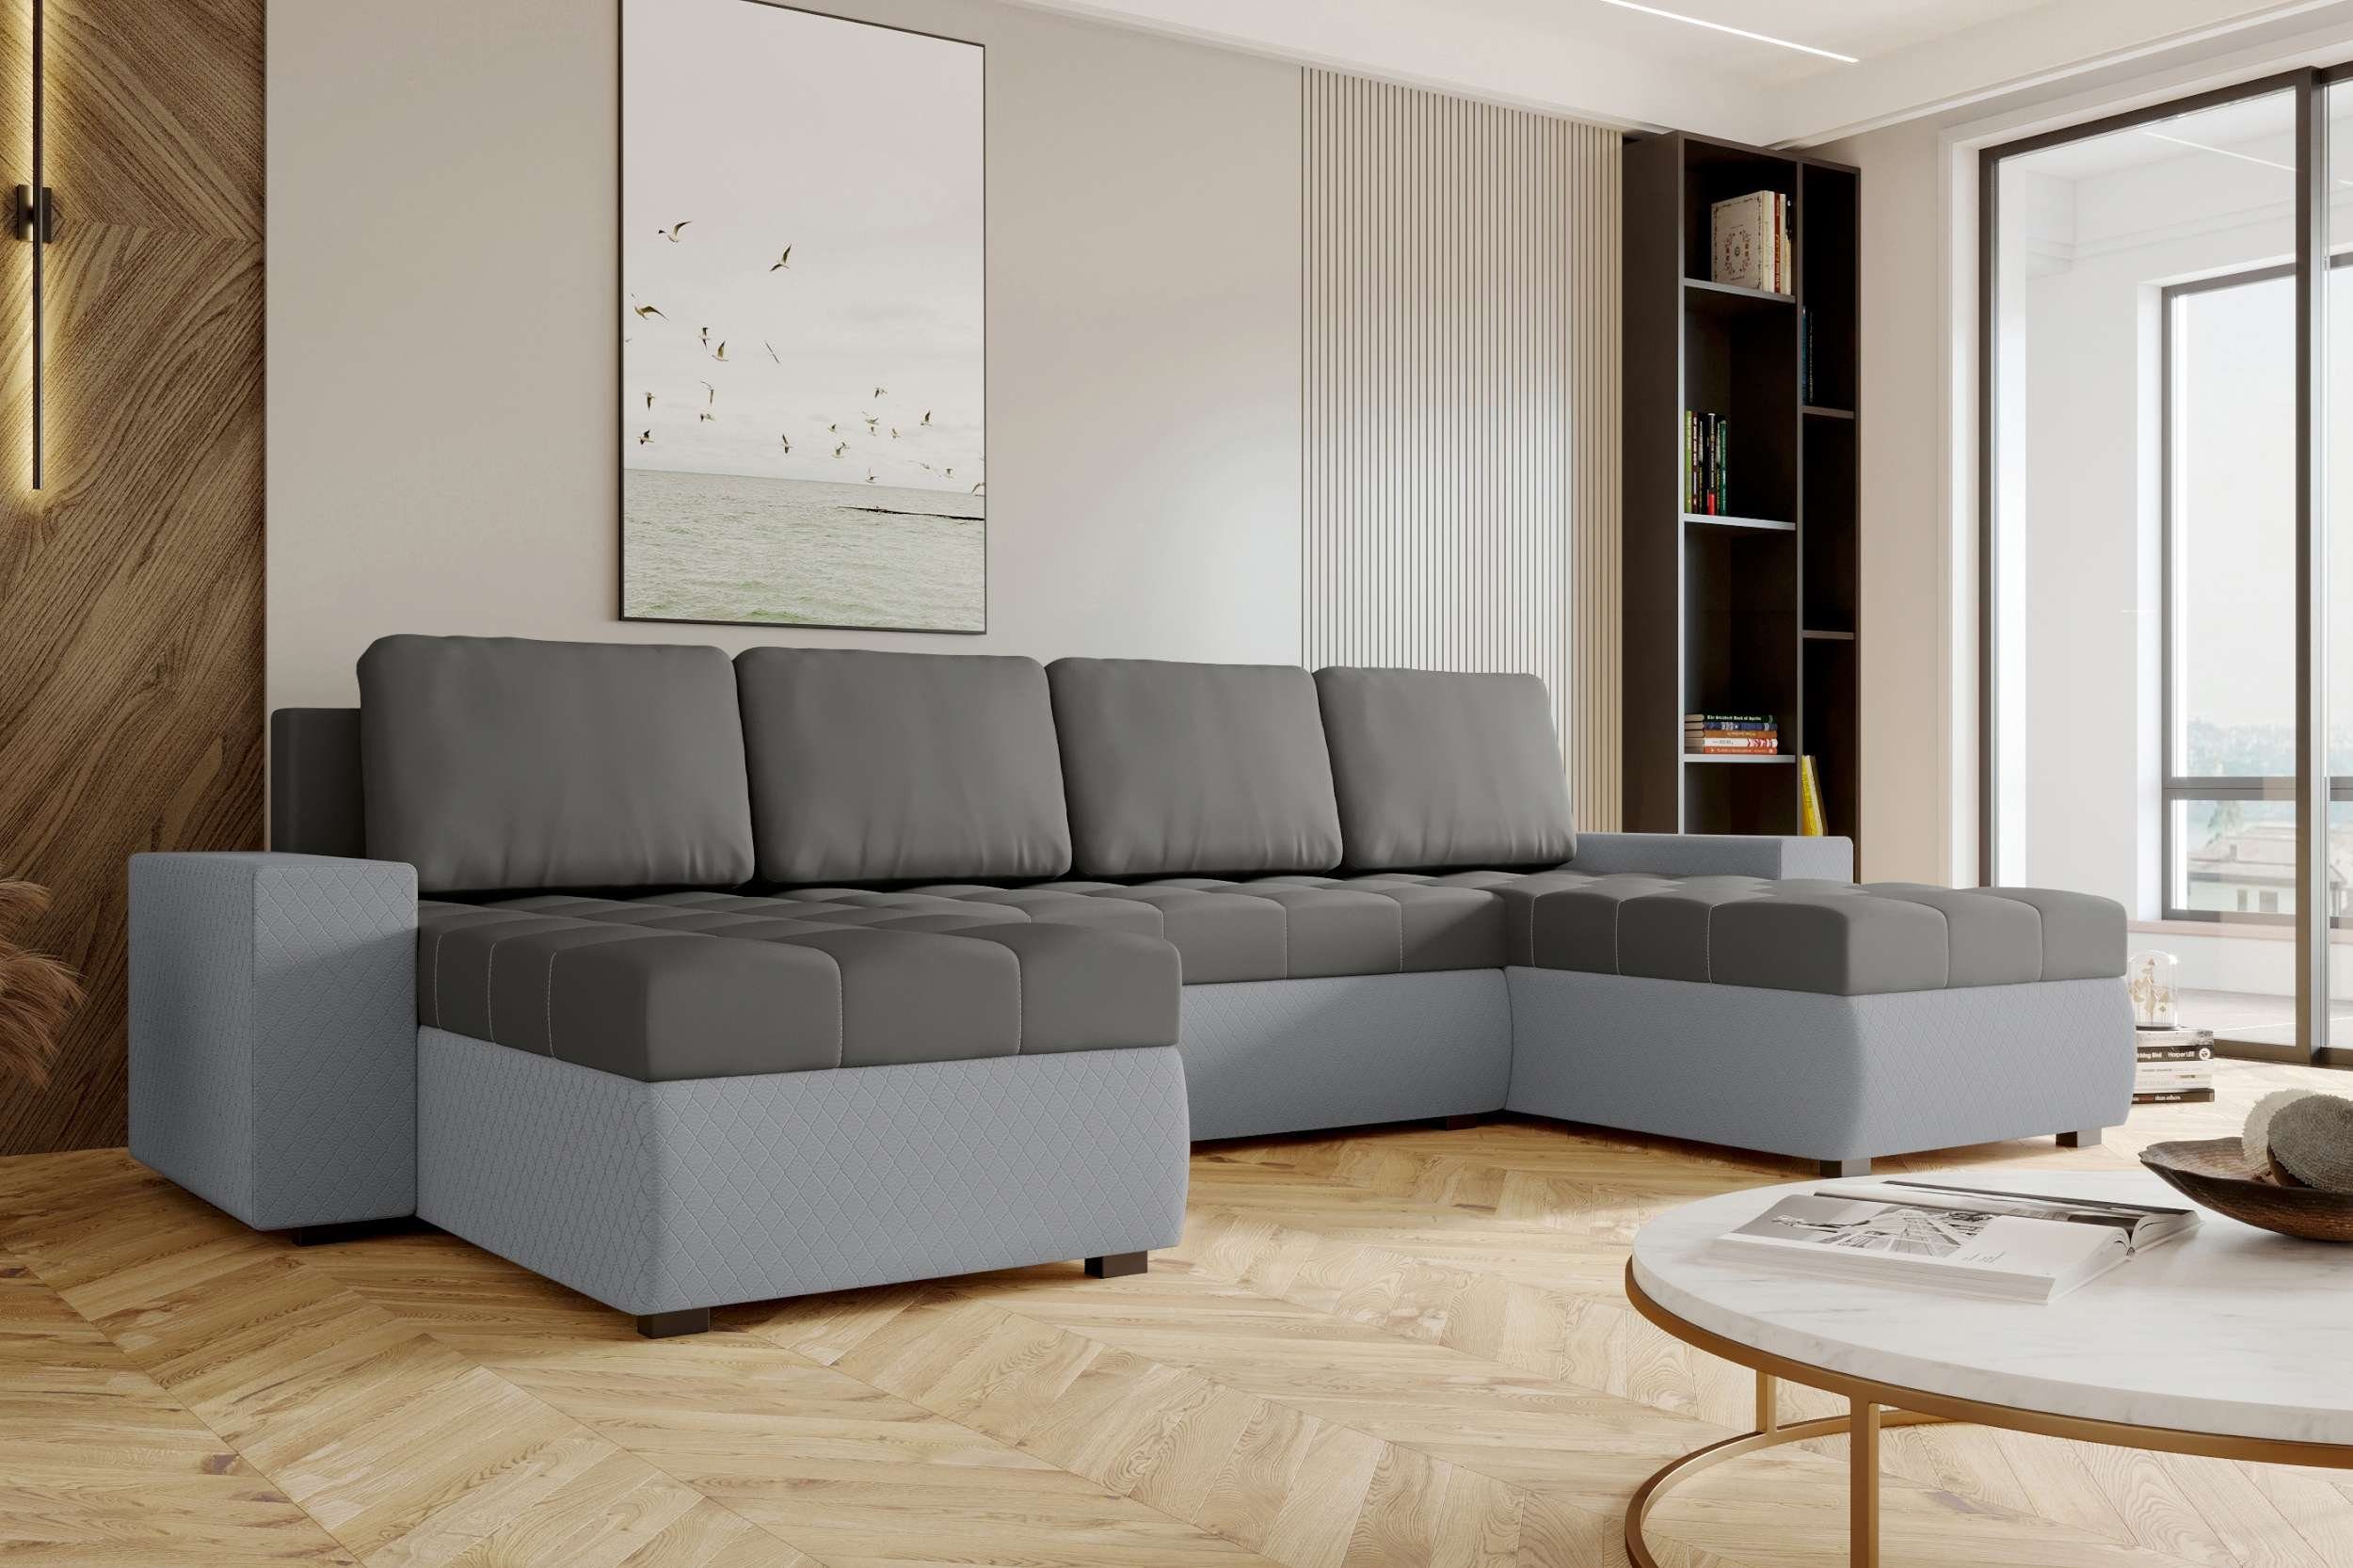 Bettfunktion, Sofa, mit Bettkasten, Sitzkomfort, Amelia, Stylefy Design mit U-Form, Wohnlandschaft Modern Eckcouch,